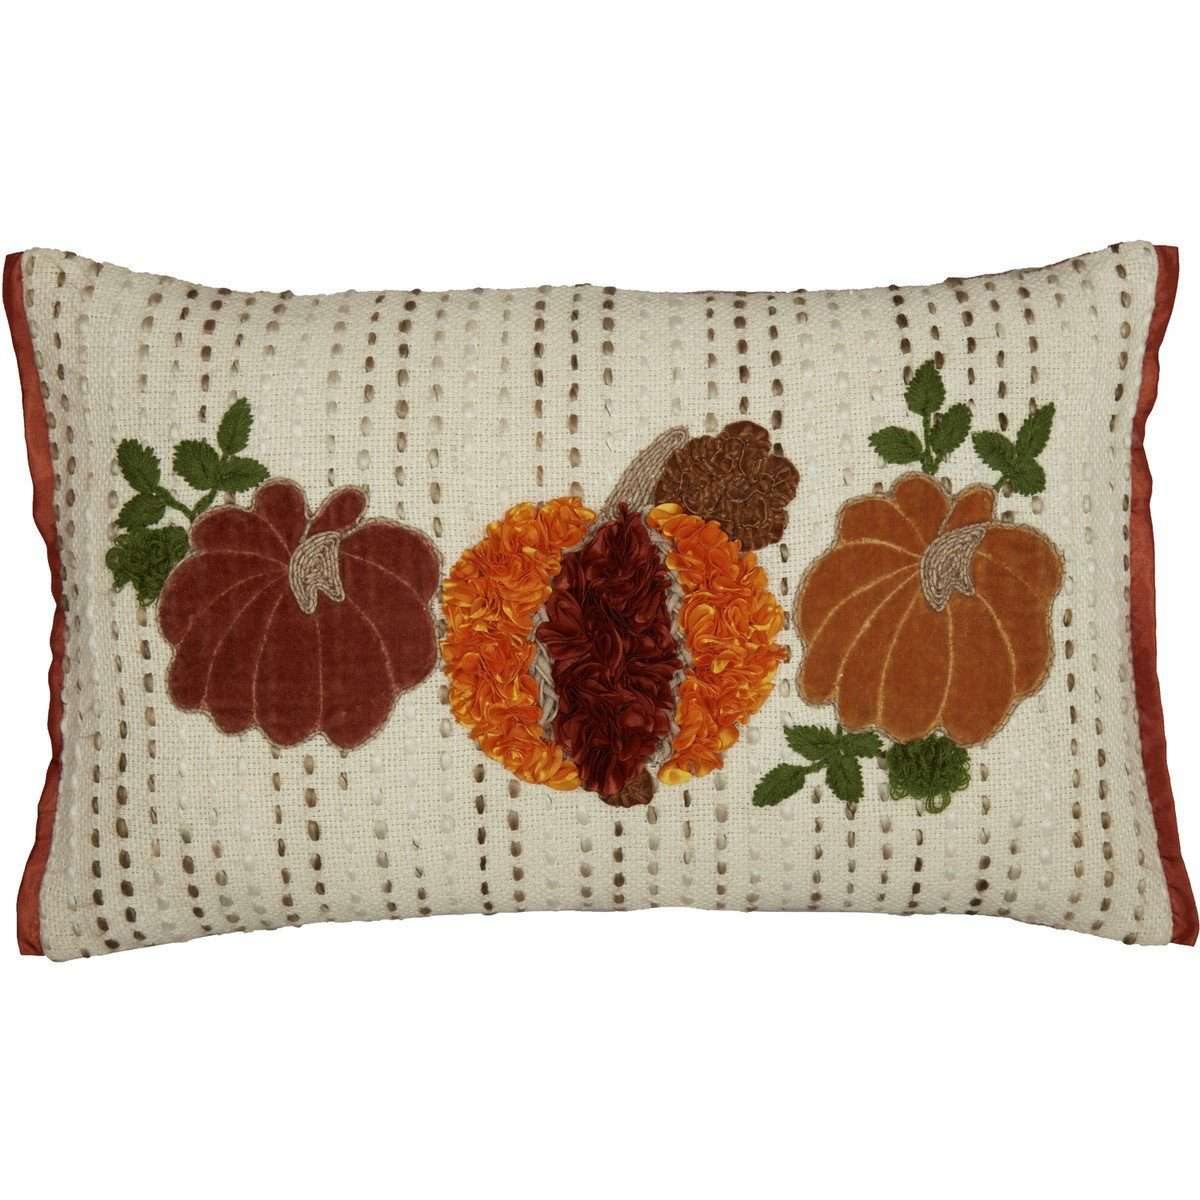 Autumn Pumpkin Patch Pillow 14x22 VHC Brands front